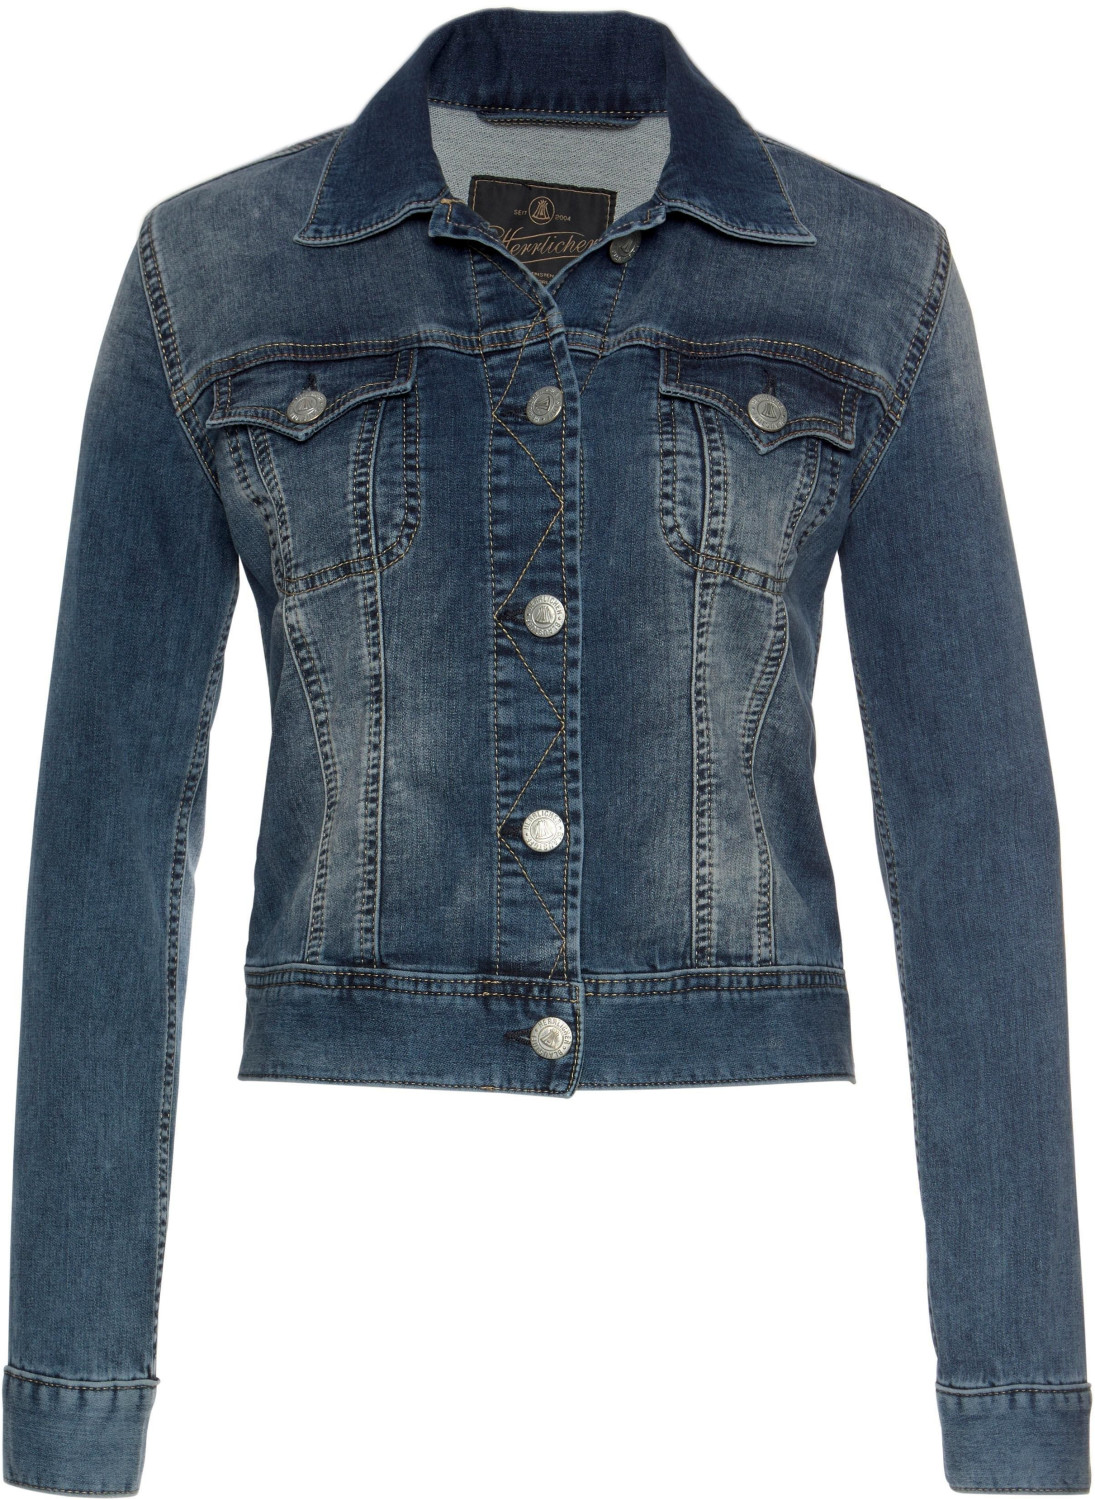 Herrlicher Jeans Jacket Joplin ab 111,99 € | Preisvergleich bei